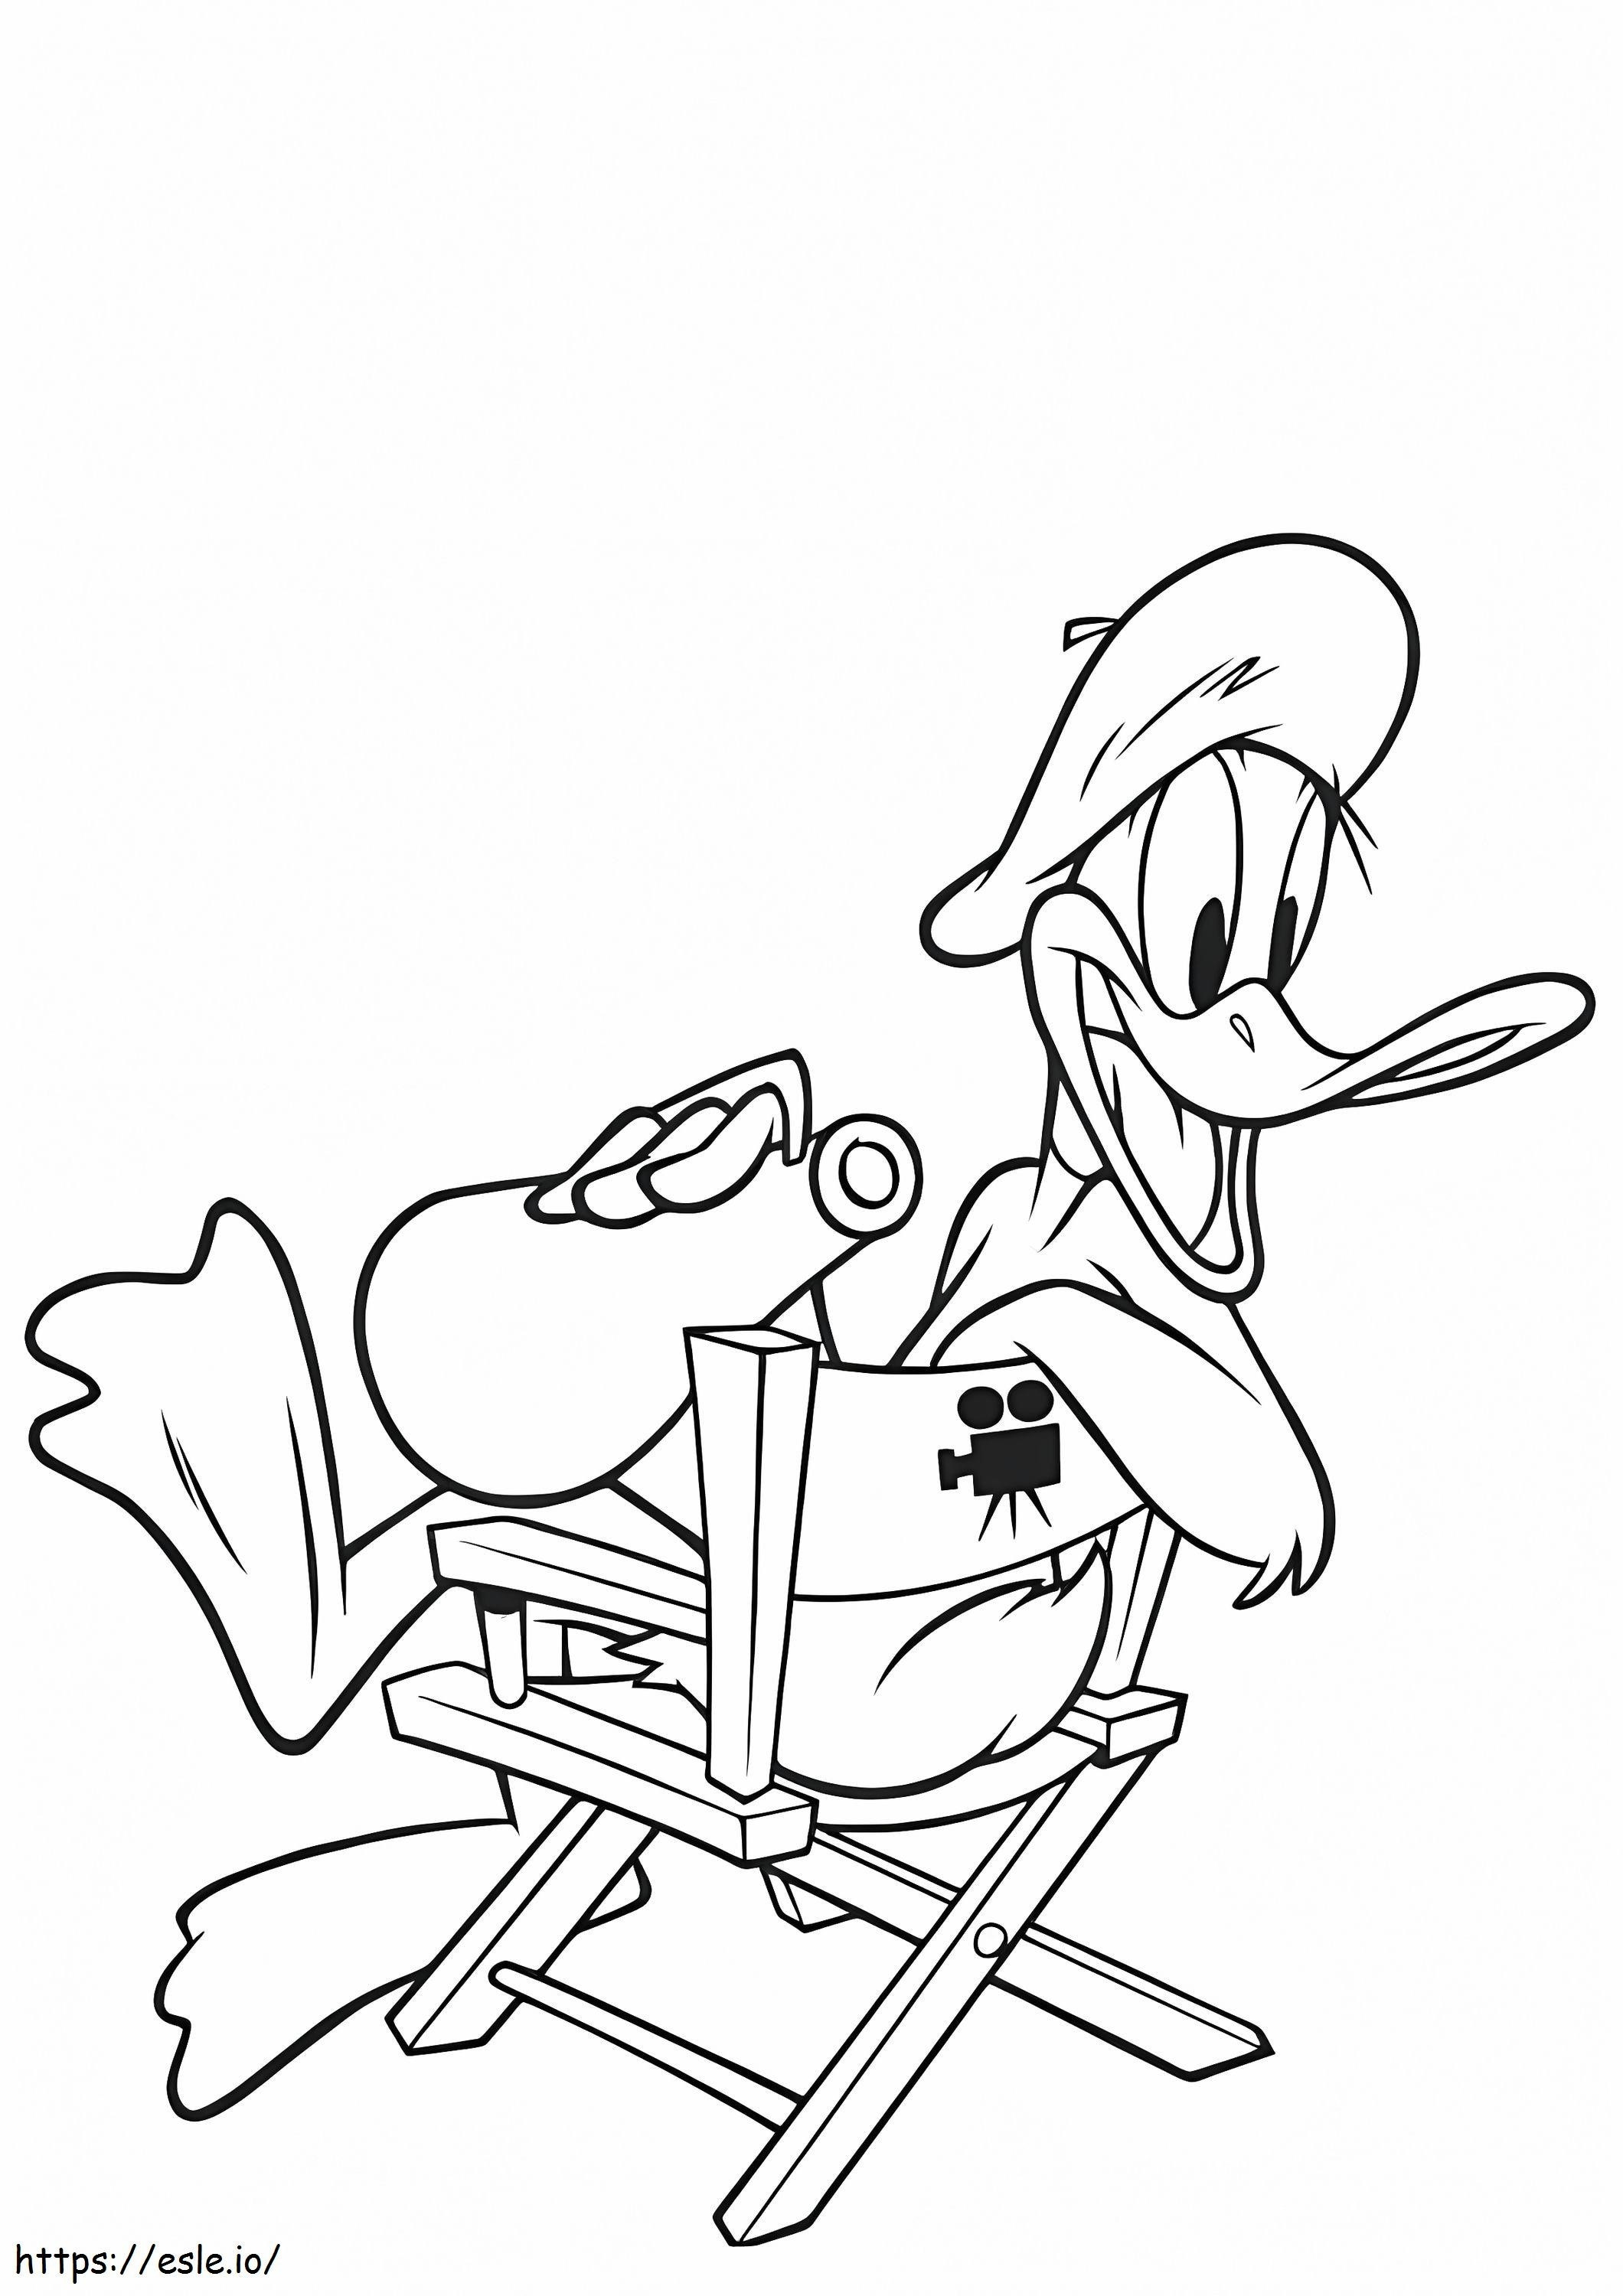 Coloriage Daffy Duck assis sur une chaise à imprimer dessin